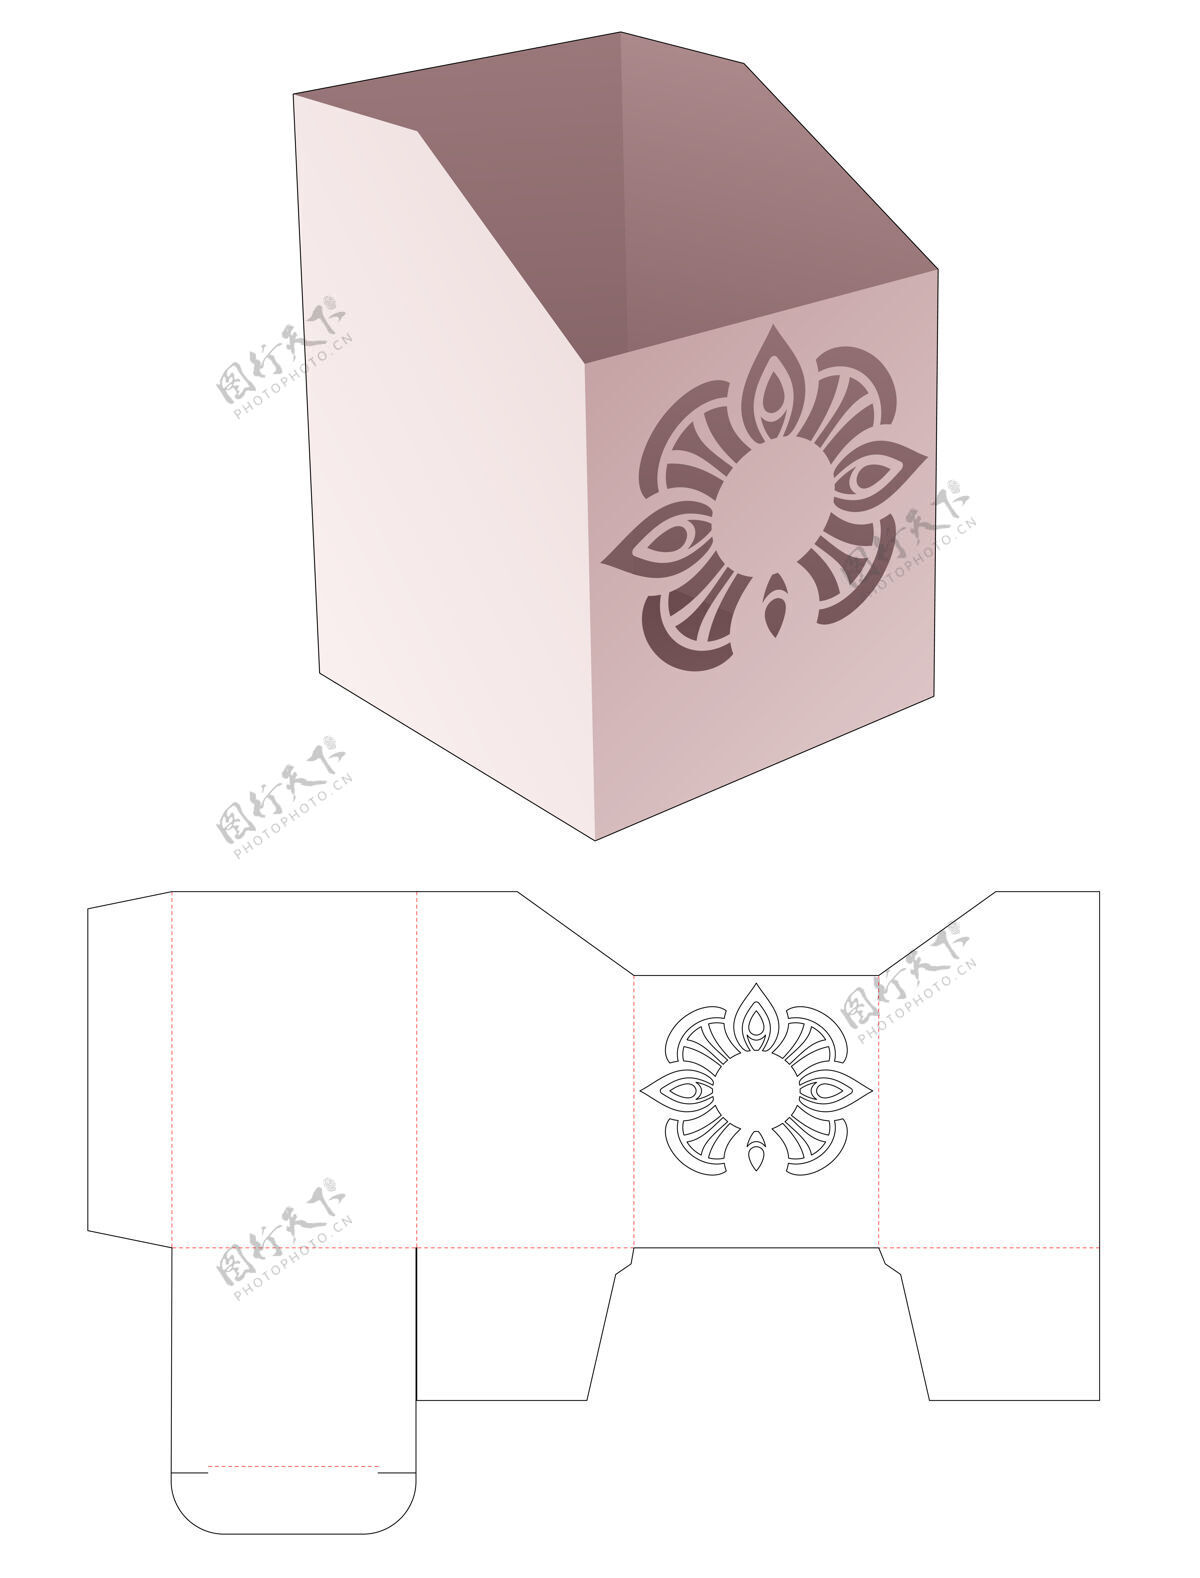 蓝图纸板文具盒与干练曼荼罗模切模板纸空白空